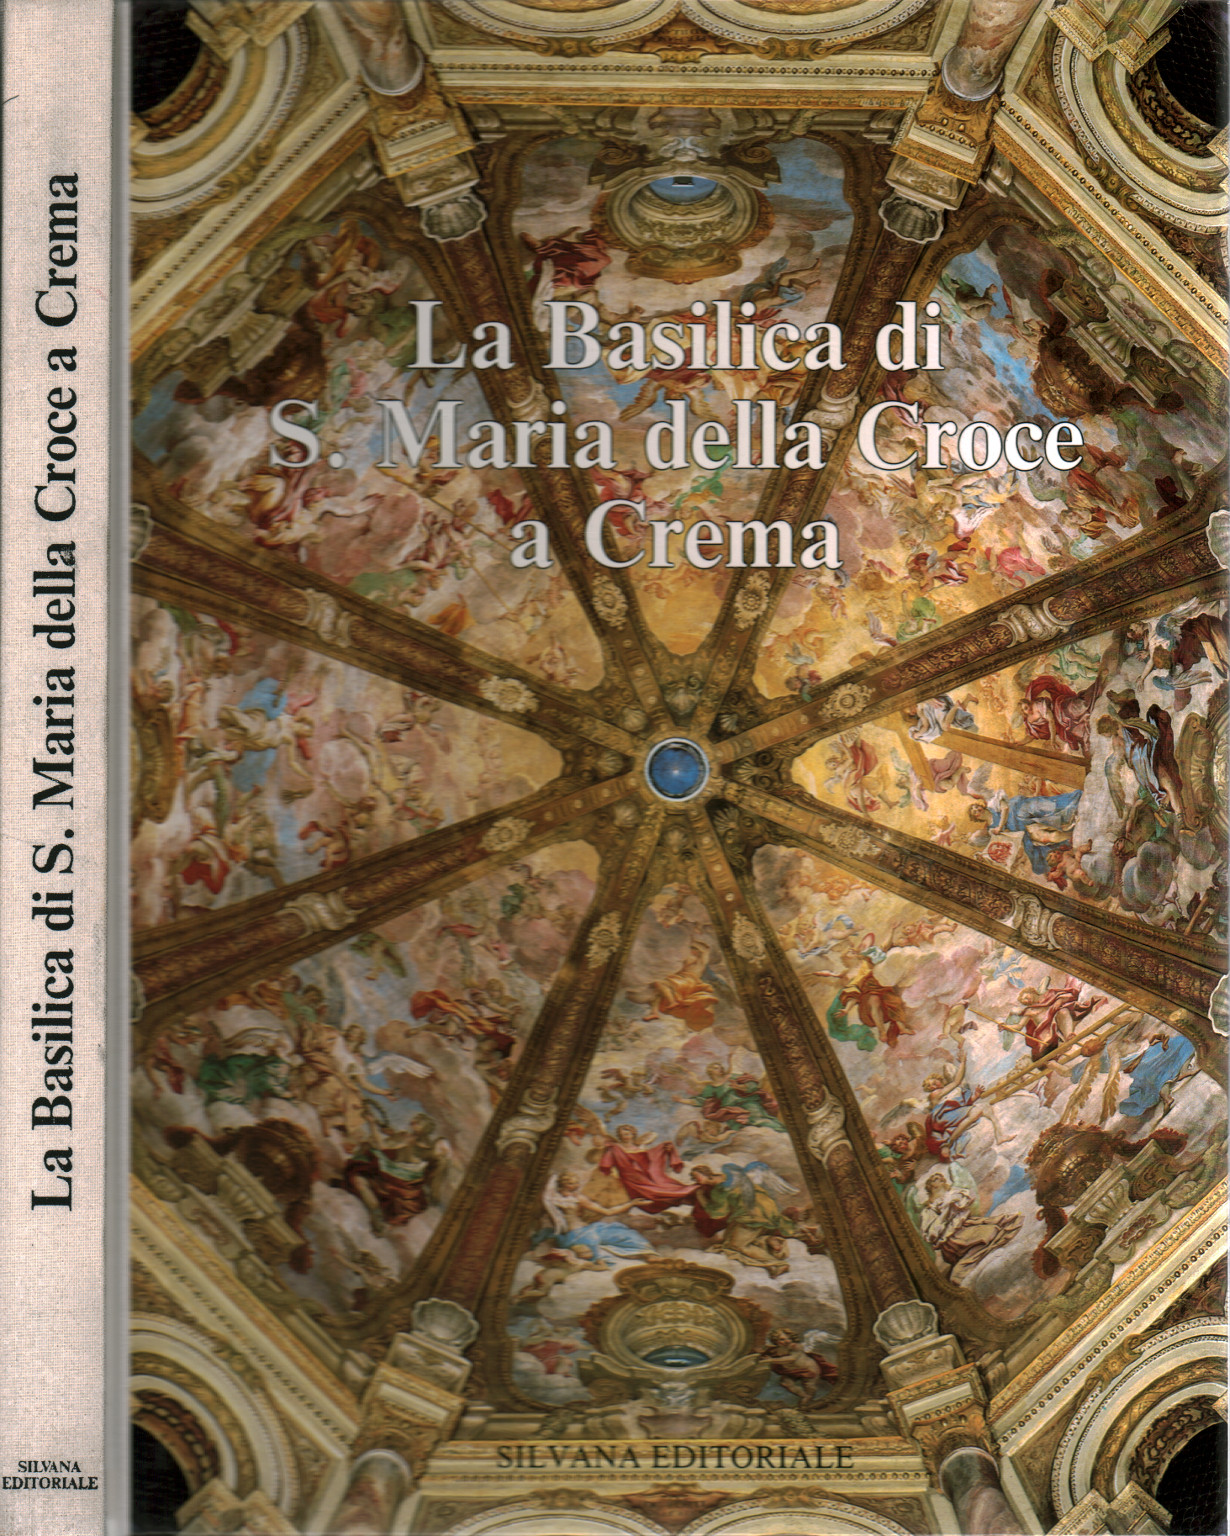 La Basilica di S.Maria della Croce a Crema, s.a.